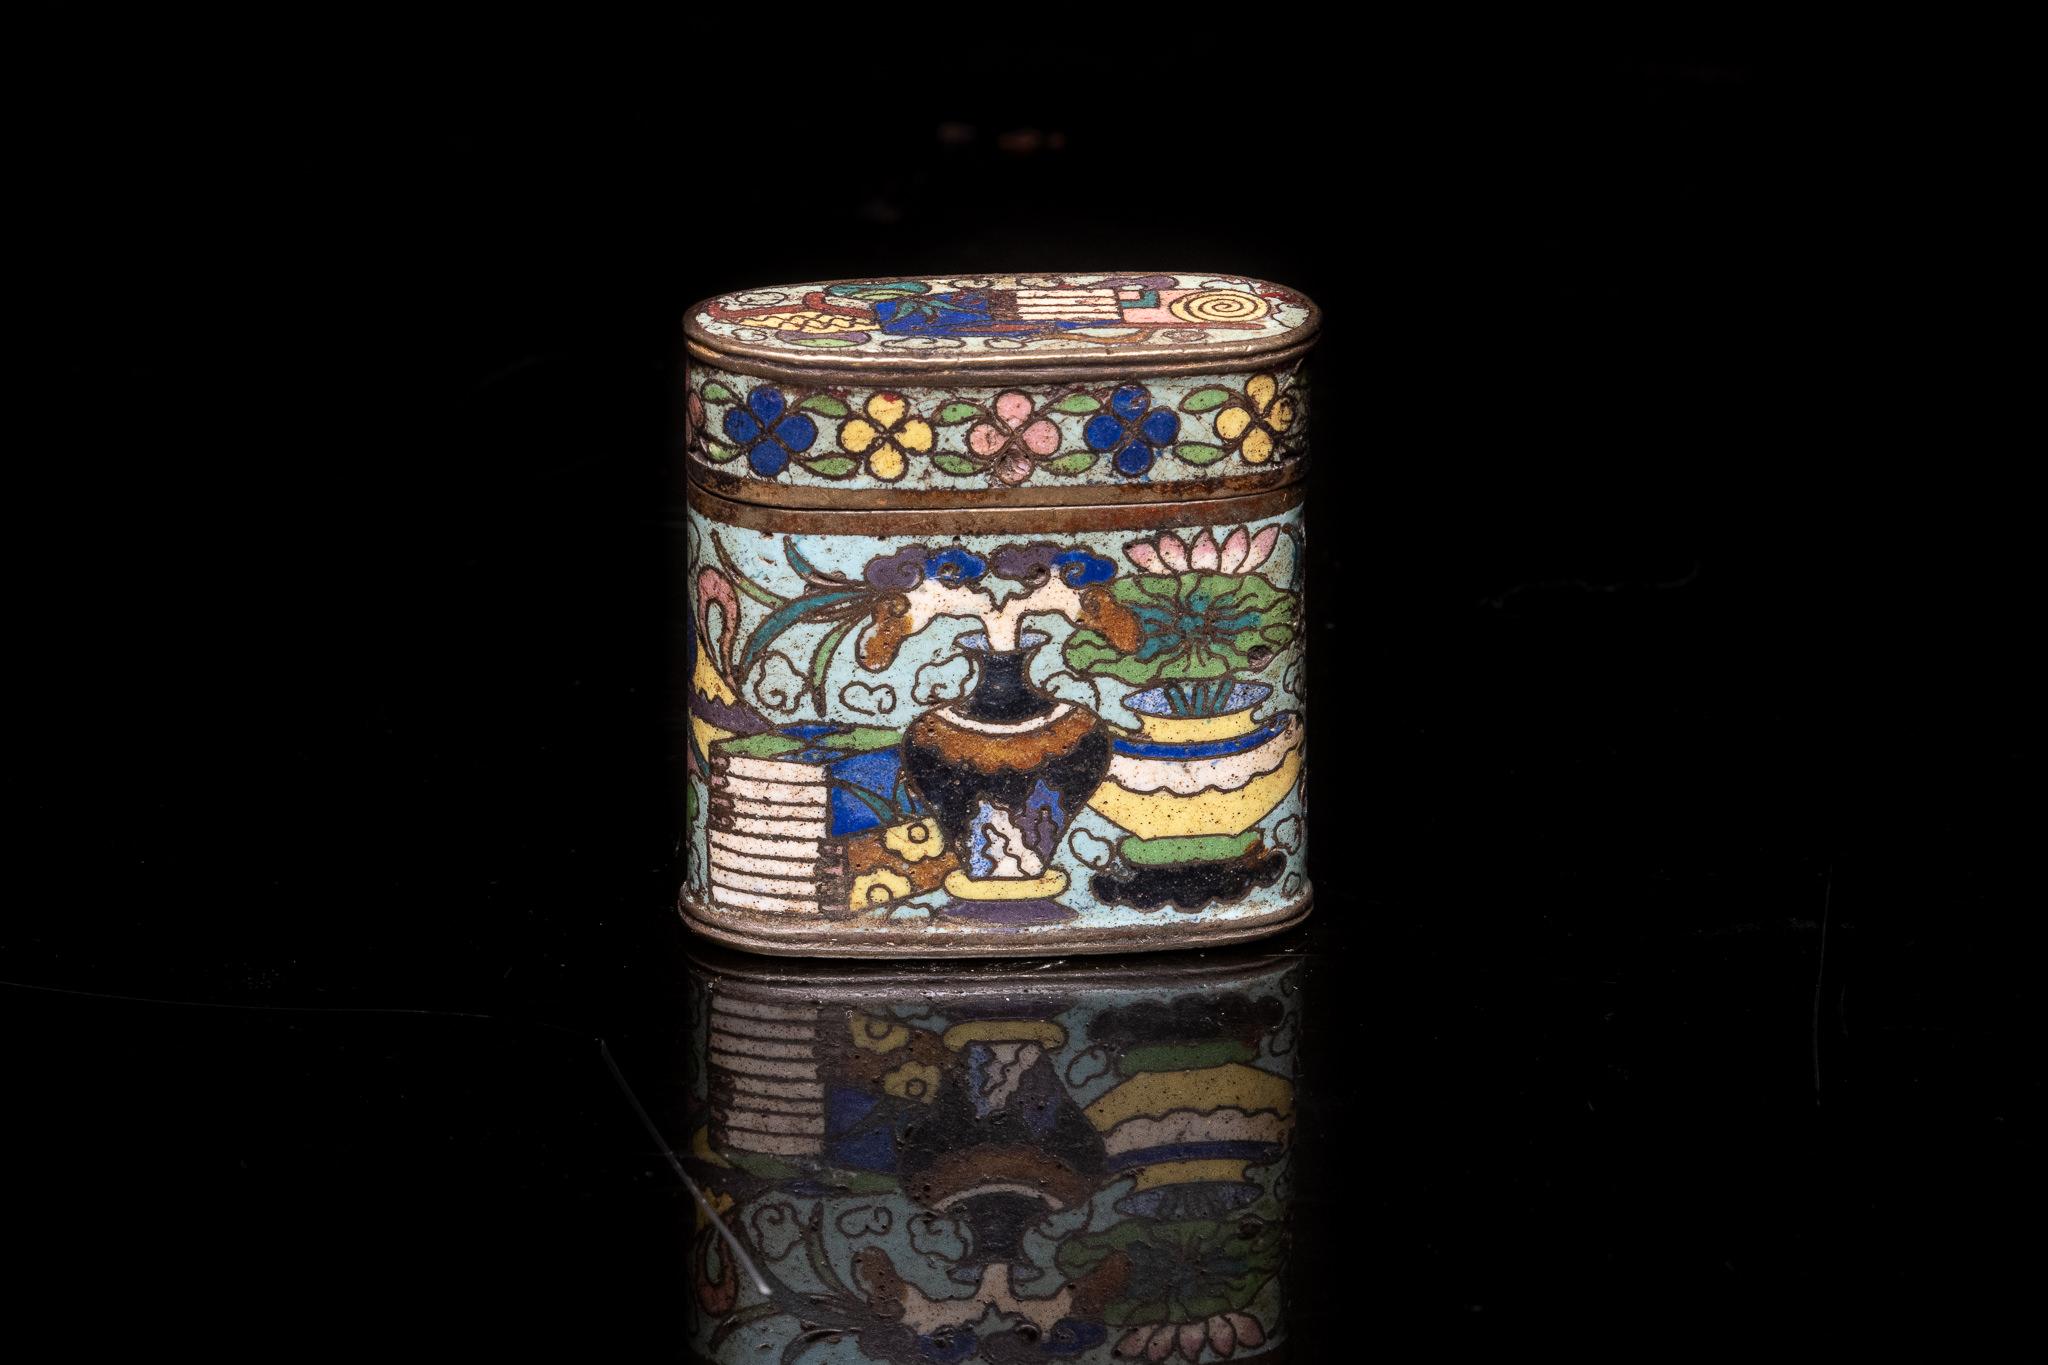 Antike chinesische Opiumdose aus Cloisonné-Email, verziert mit floralen Motiven und Innenszenen

Französische Private Collection'S